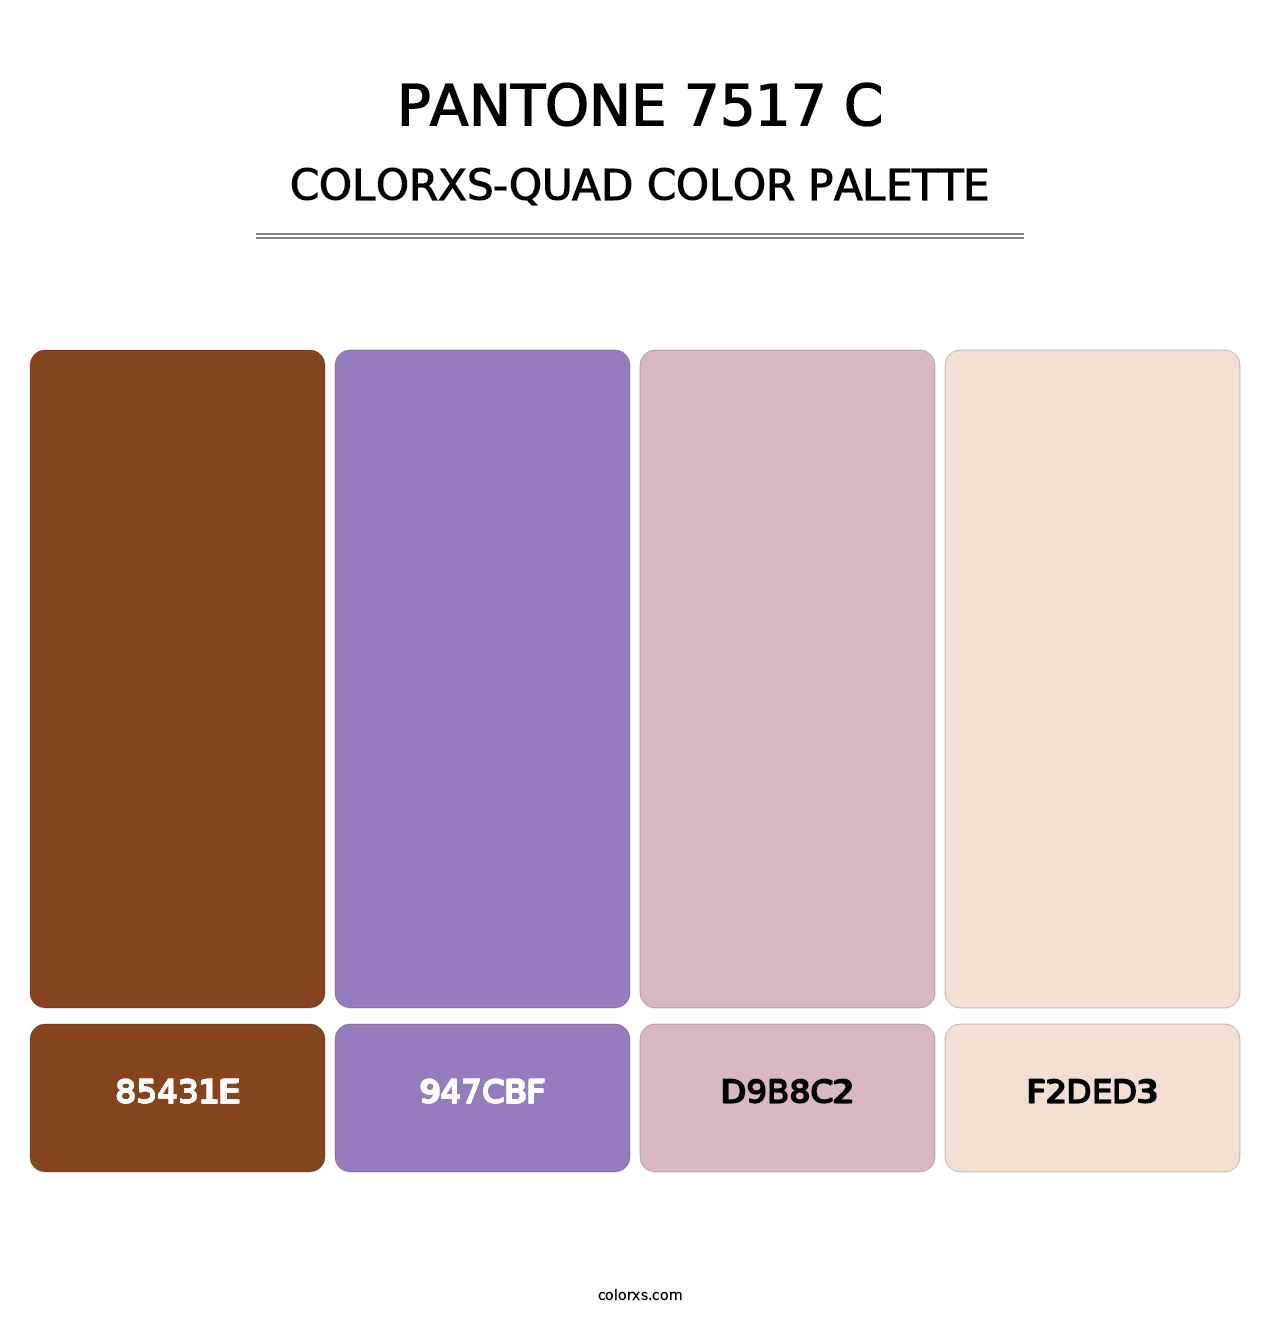 PANTONE 7517 C - Colorxs Quad Palette